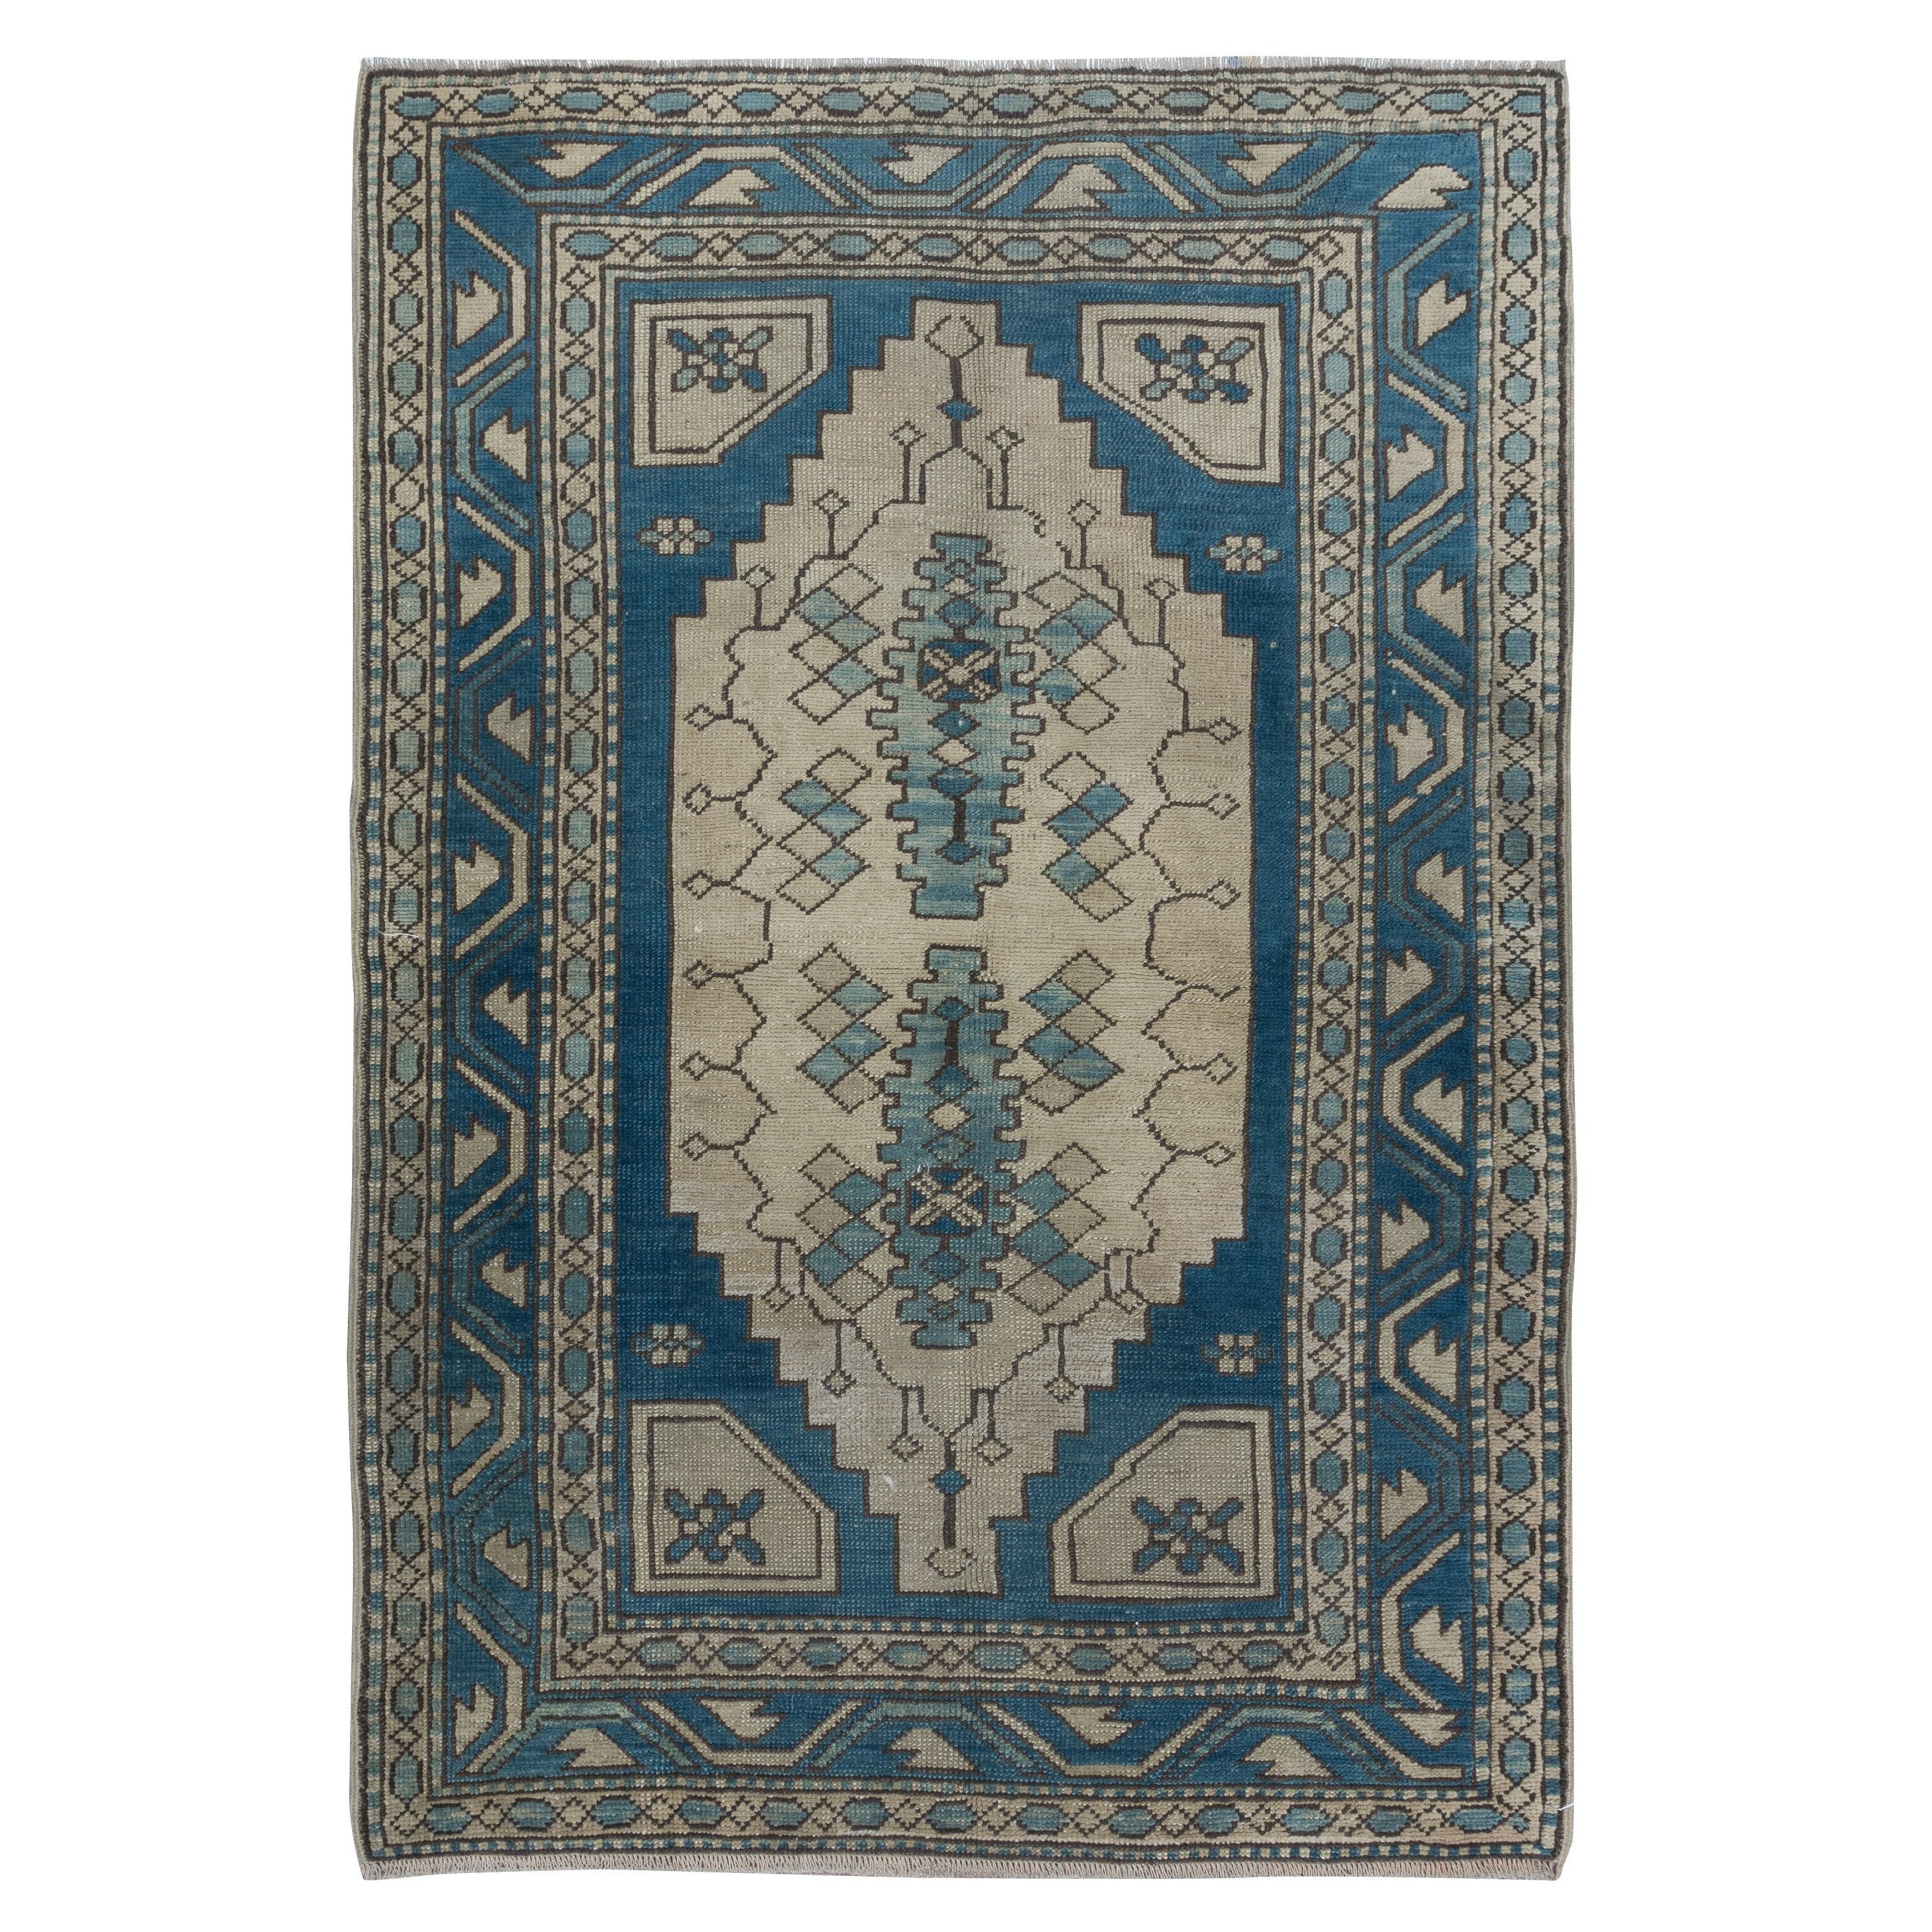 4x6 Ft Vintage Turkish Rug in Dark Blue & Beige, Handmade Wool Village Carpet For Sale